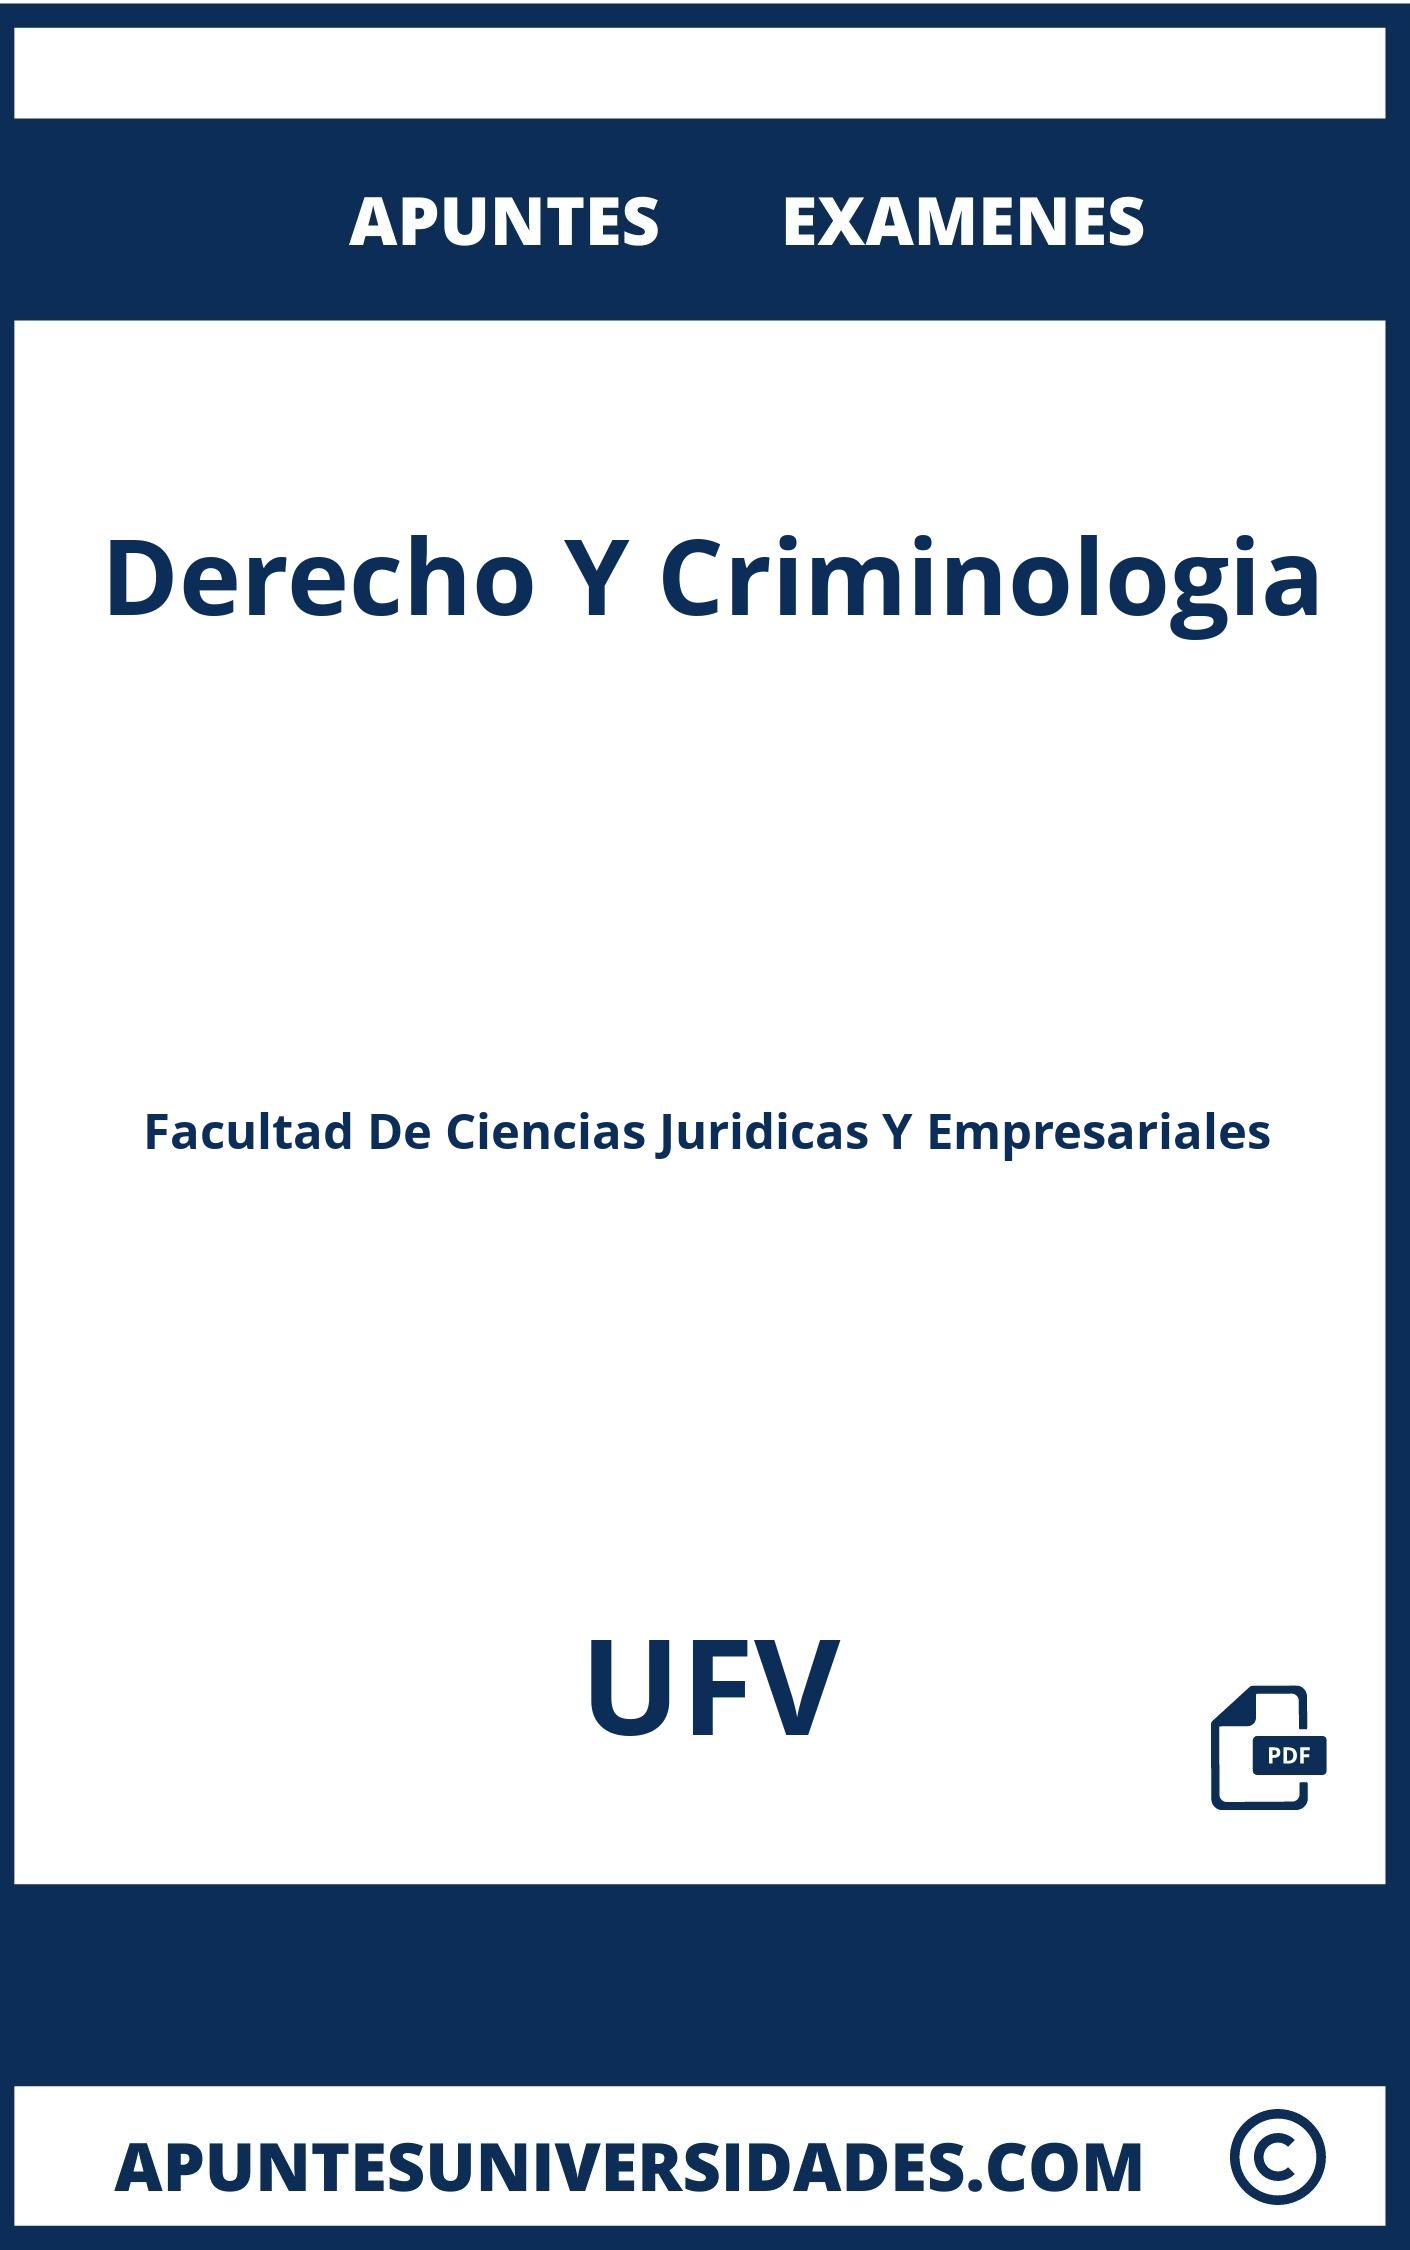 Apuntes y Examenes de Derecho Y Criminologia UFV